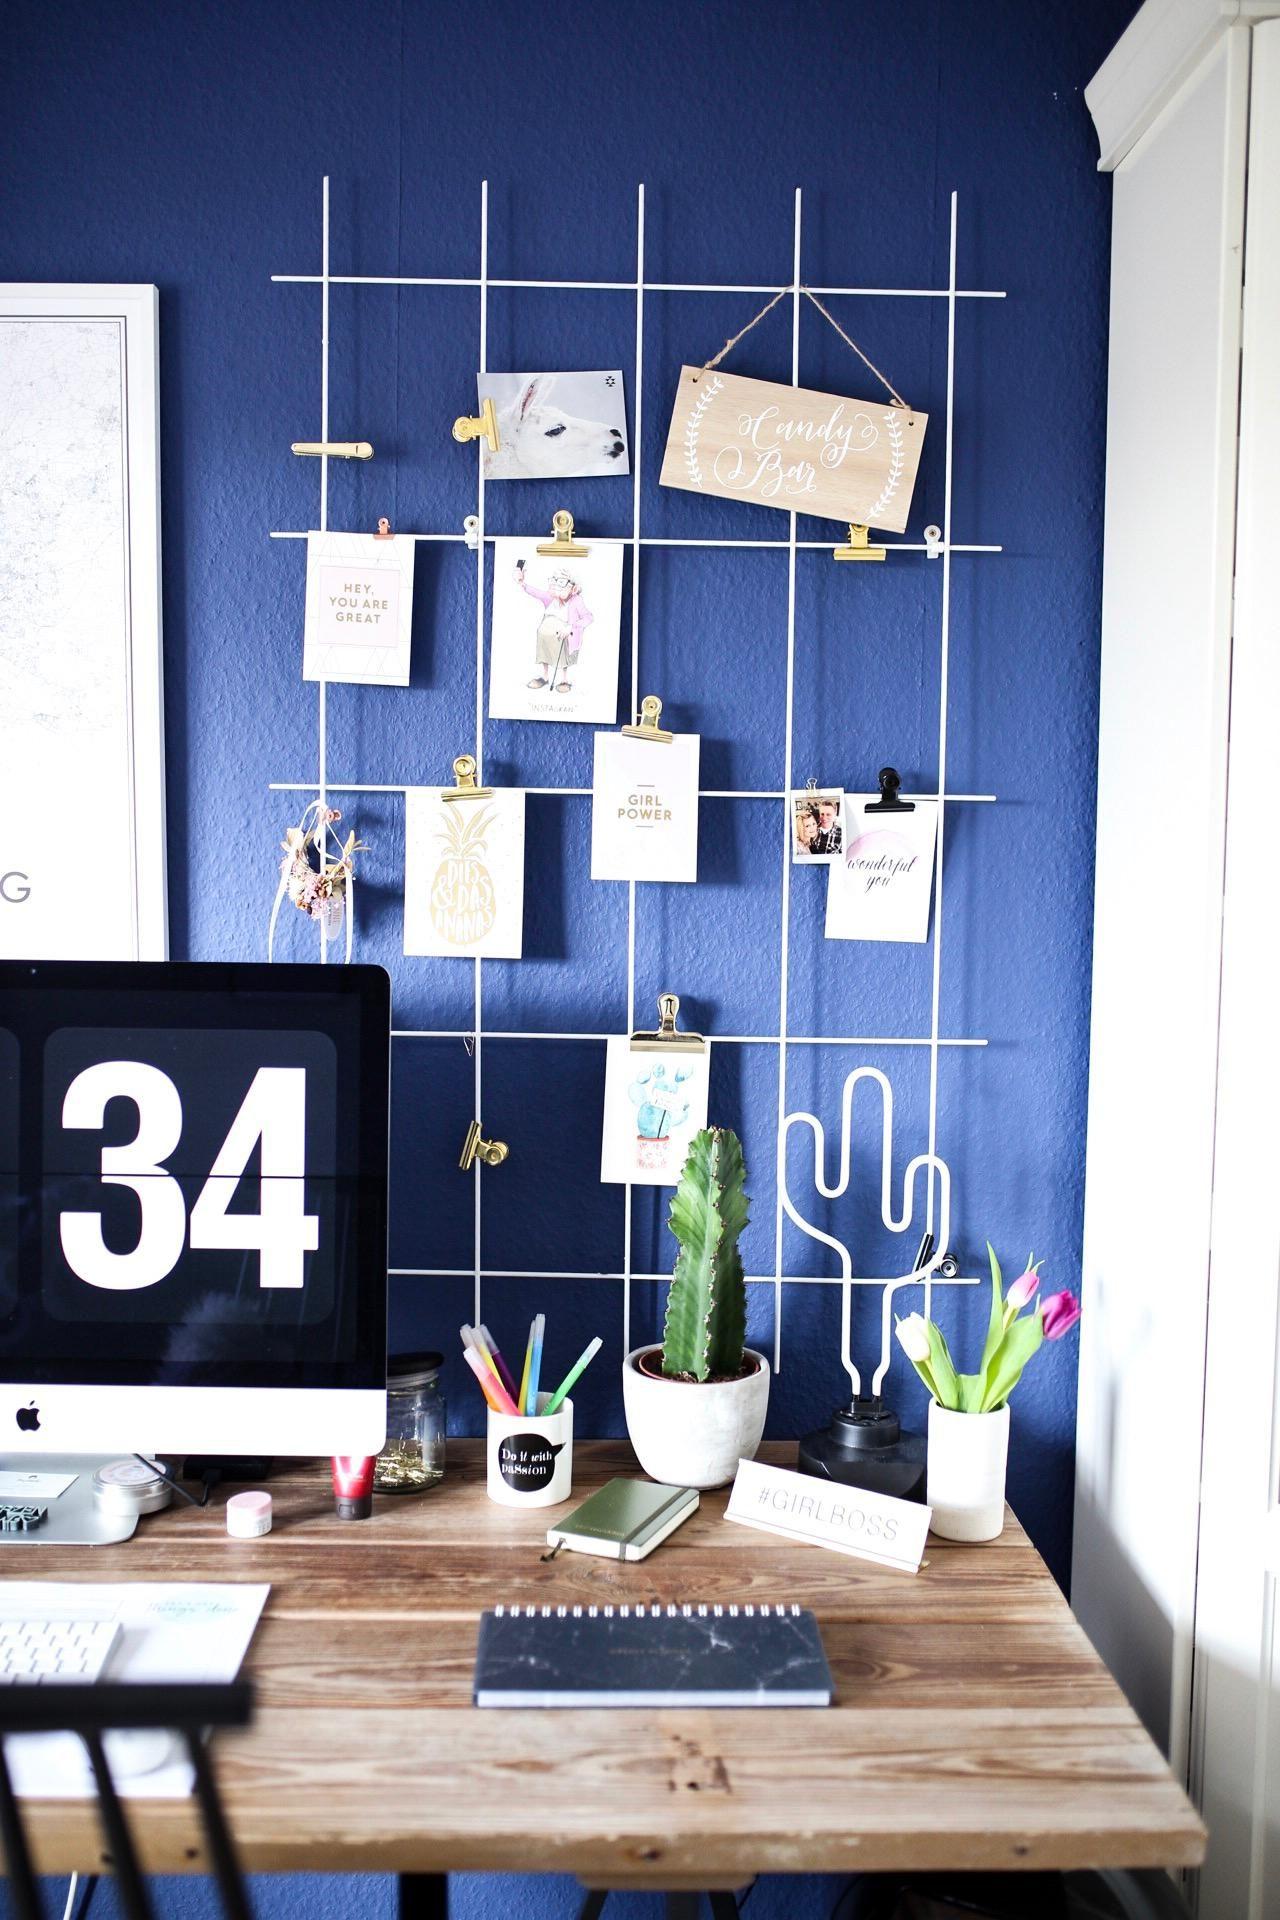 Schreibtischinspiration – Kaktusliebe auf dem Schreibtisch #urbanjungle #schreibtisch #arbeitsplatz #homeoffice